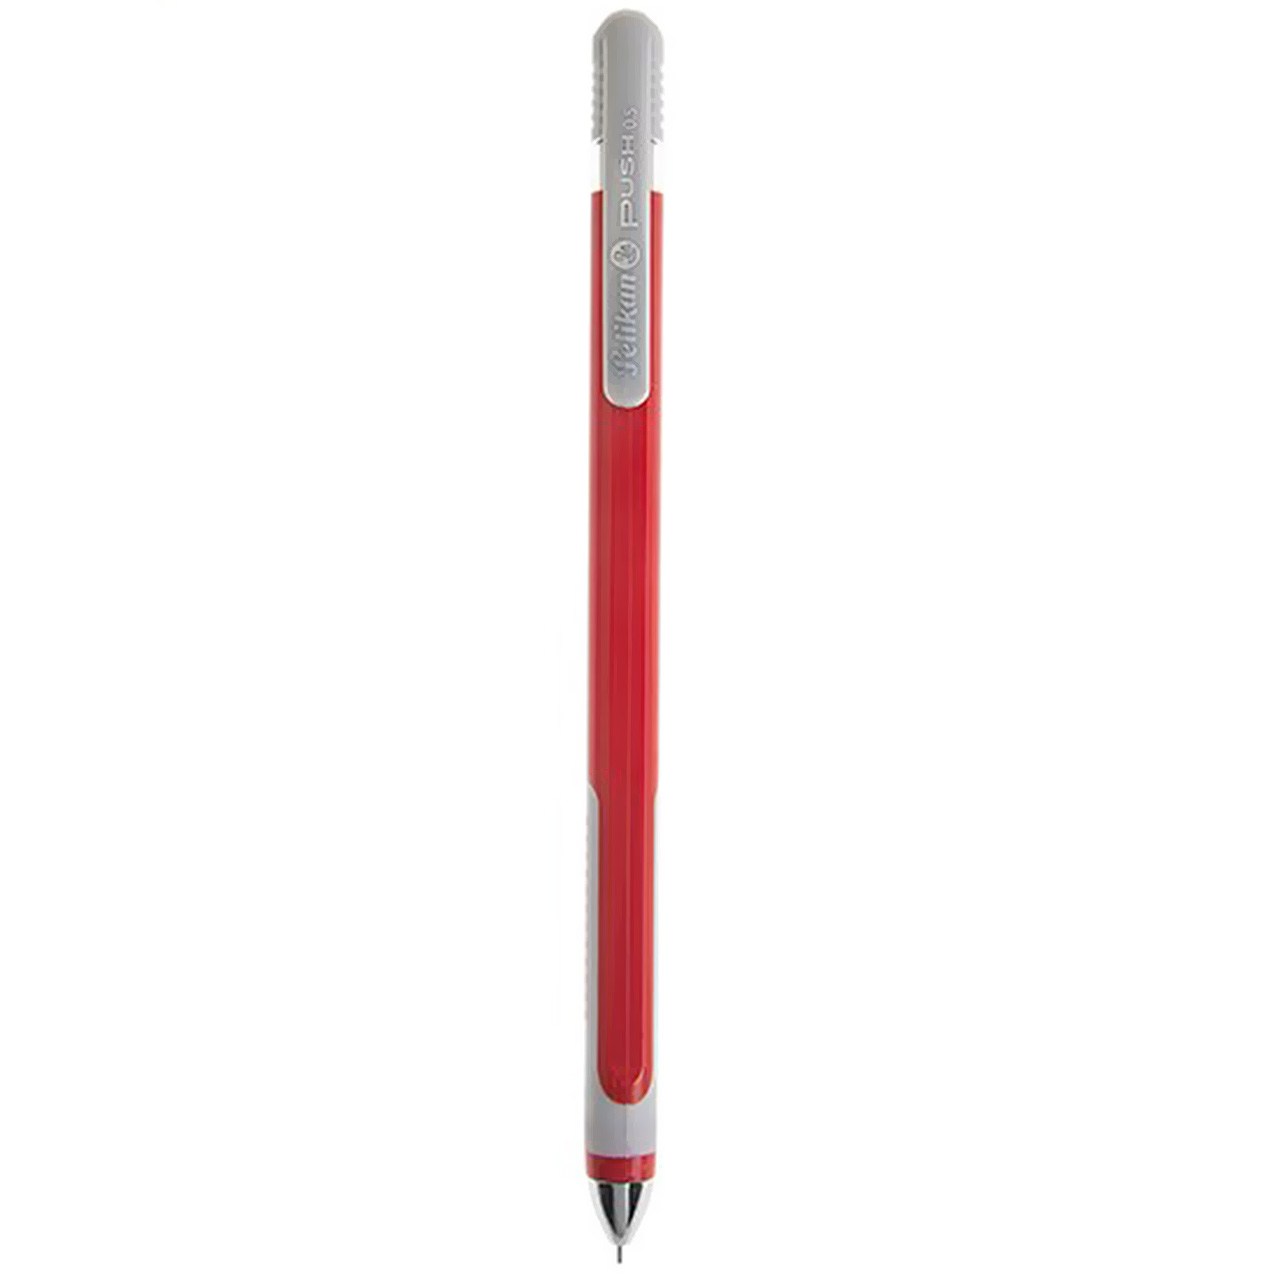 مداد نوکی پلیکان مدل Push با قطر نوشتاری 0.5 میلی متر